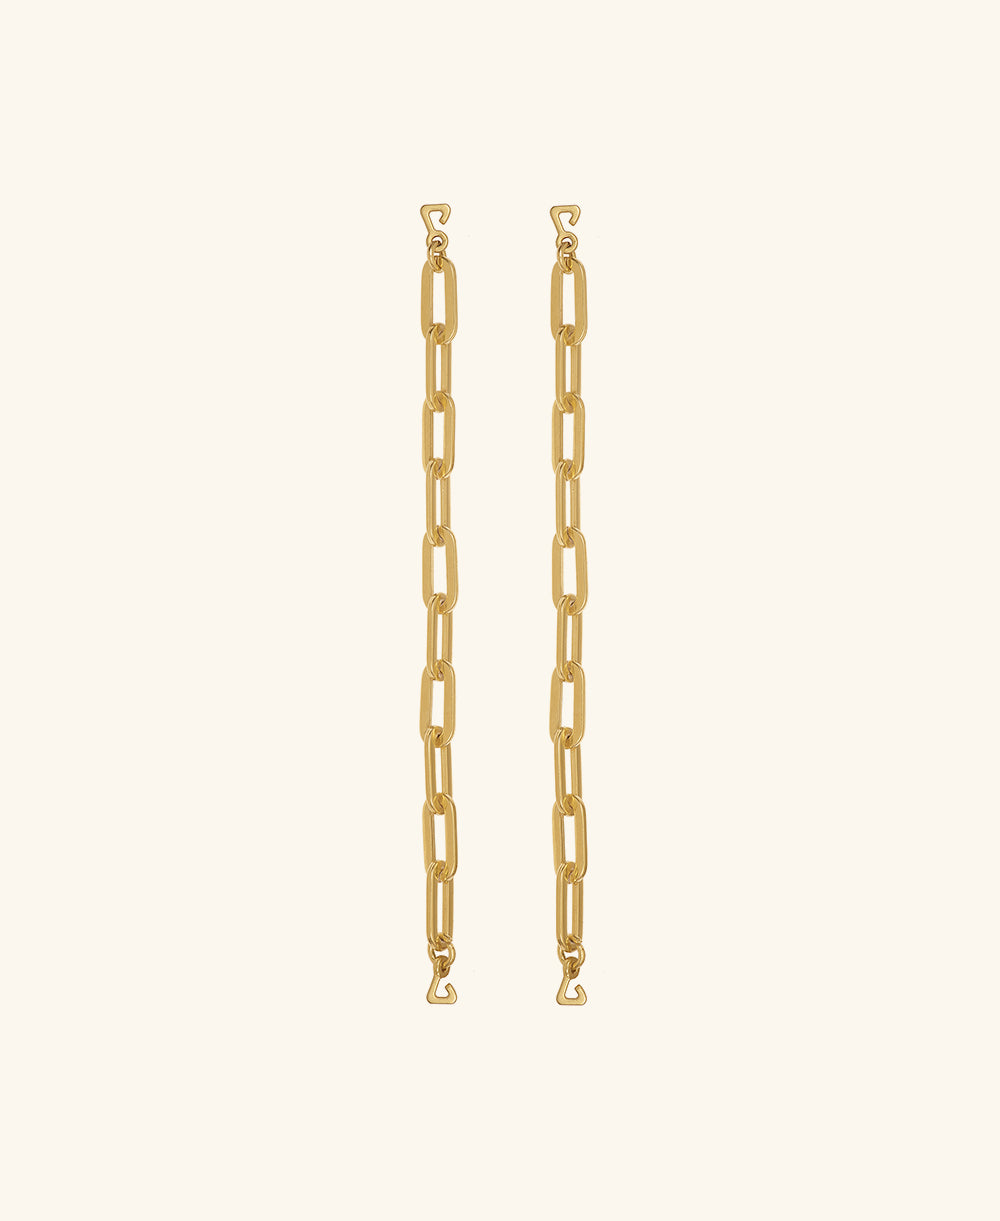 Napoli gold straps